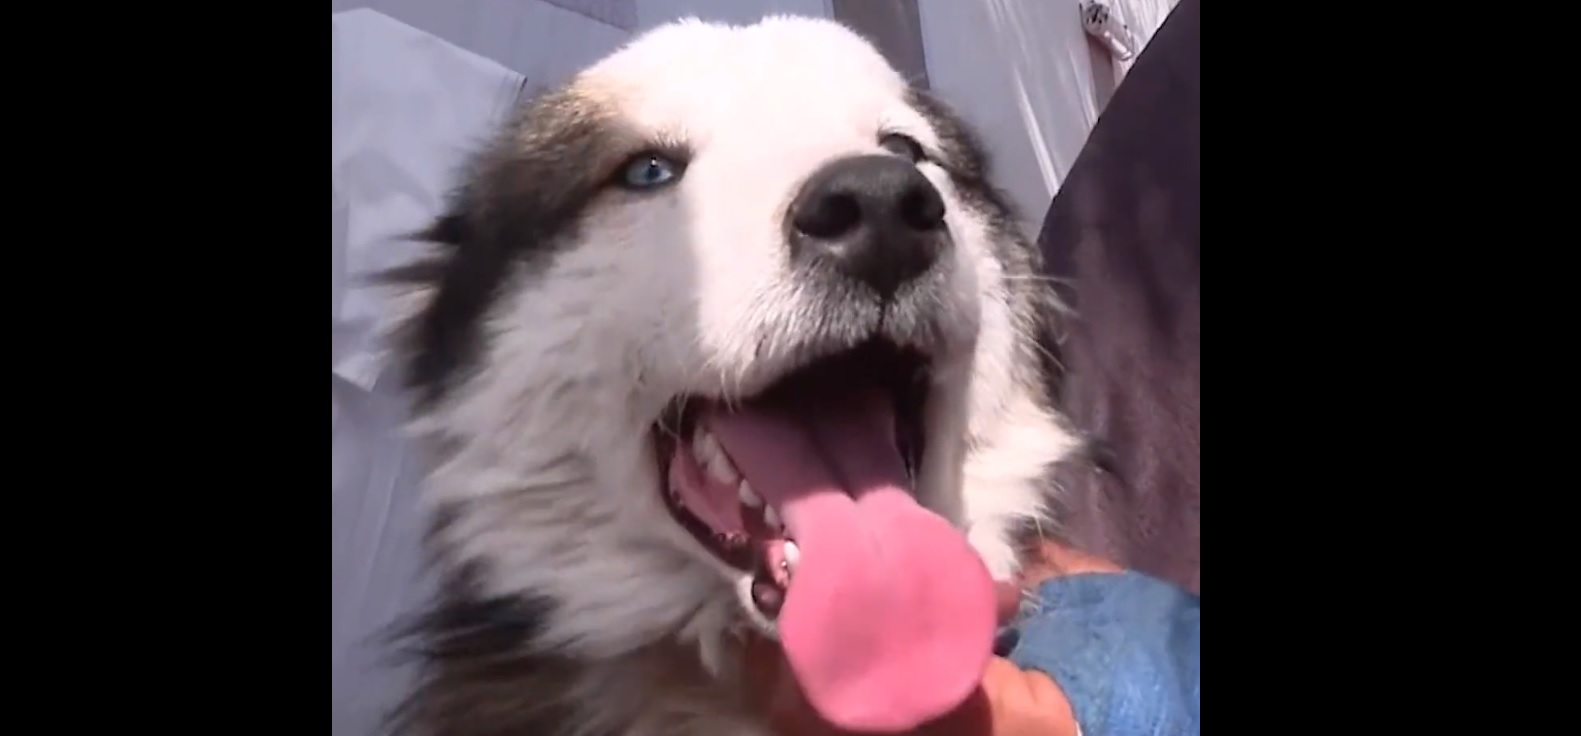 Újabb csoda: 22 napot élt túl egy kutya a romok alatt + videó